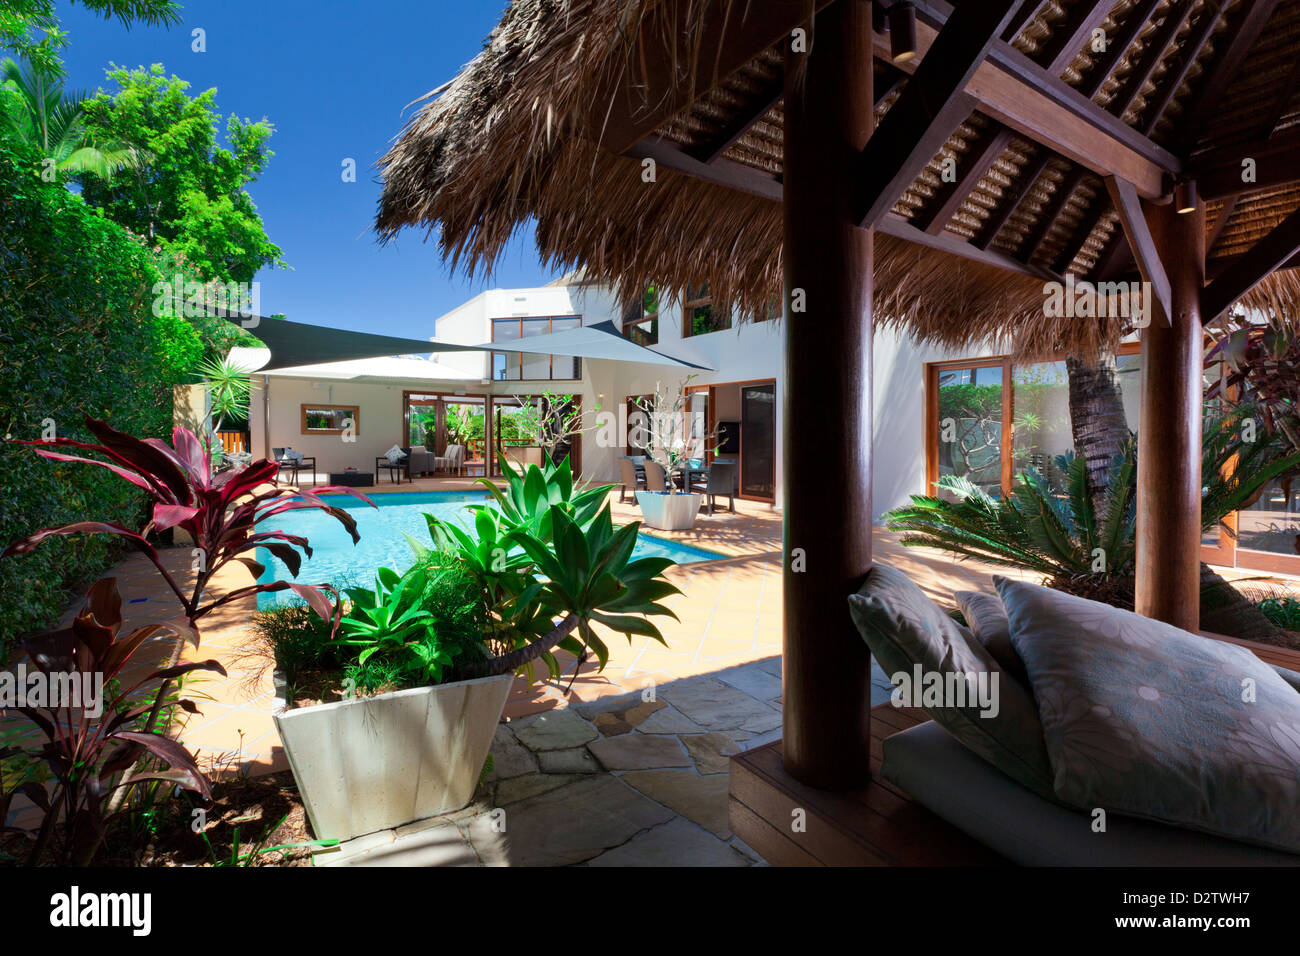 Moderner Garten mit Swimmingpool und Bali Hütte in australischen Herrenhaus Stockfoto